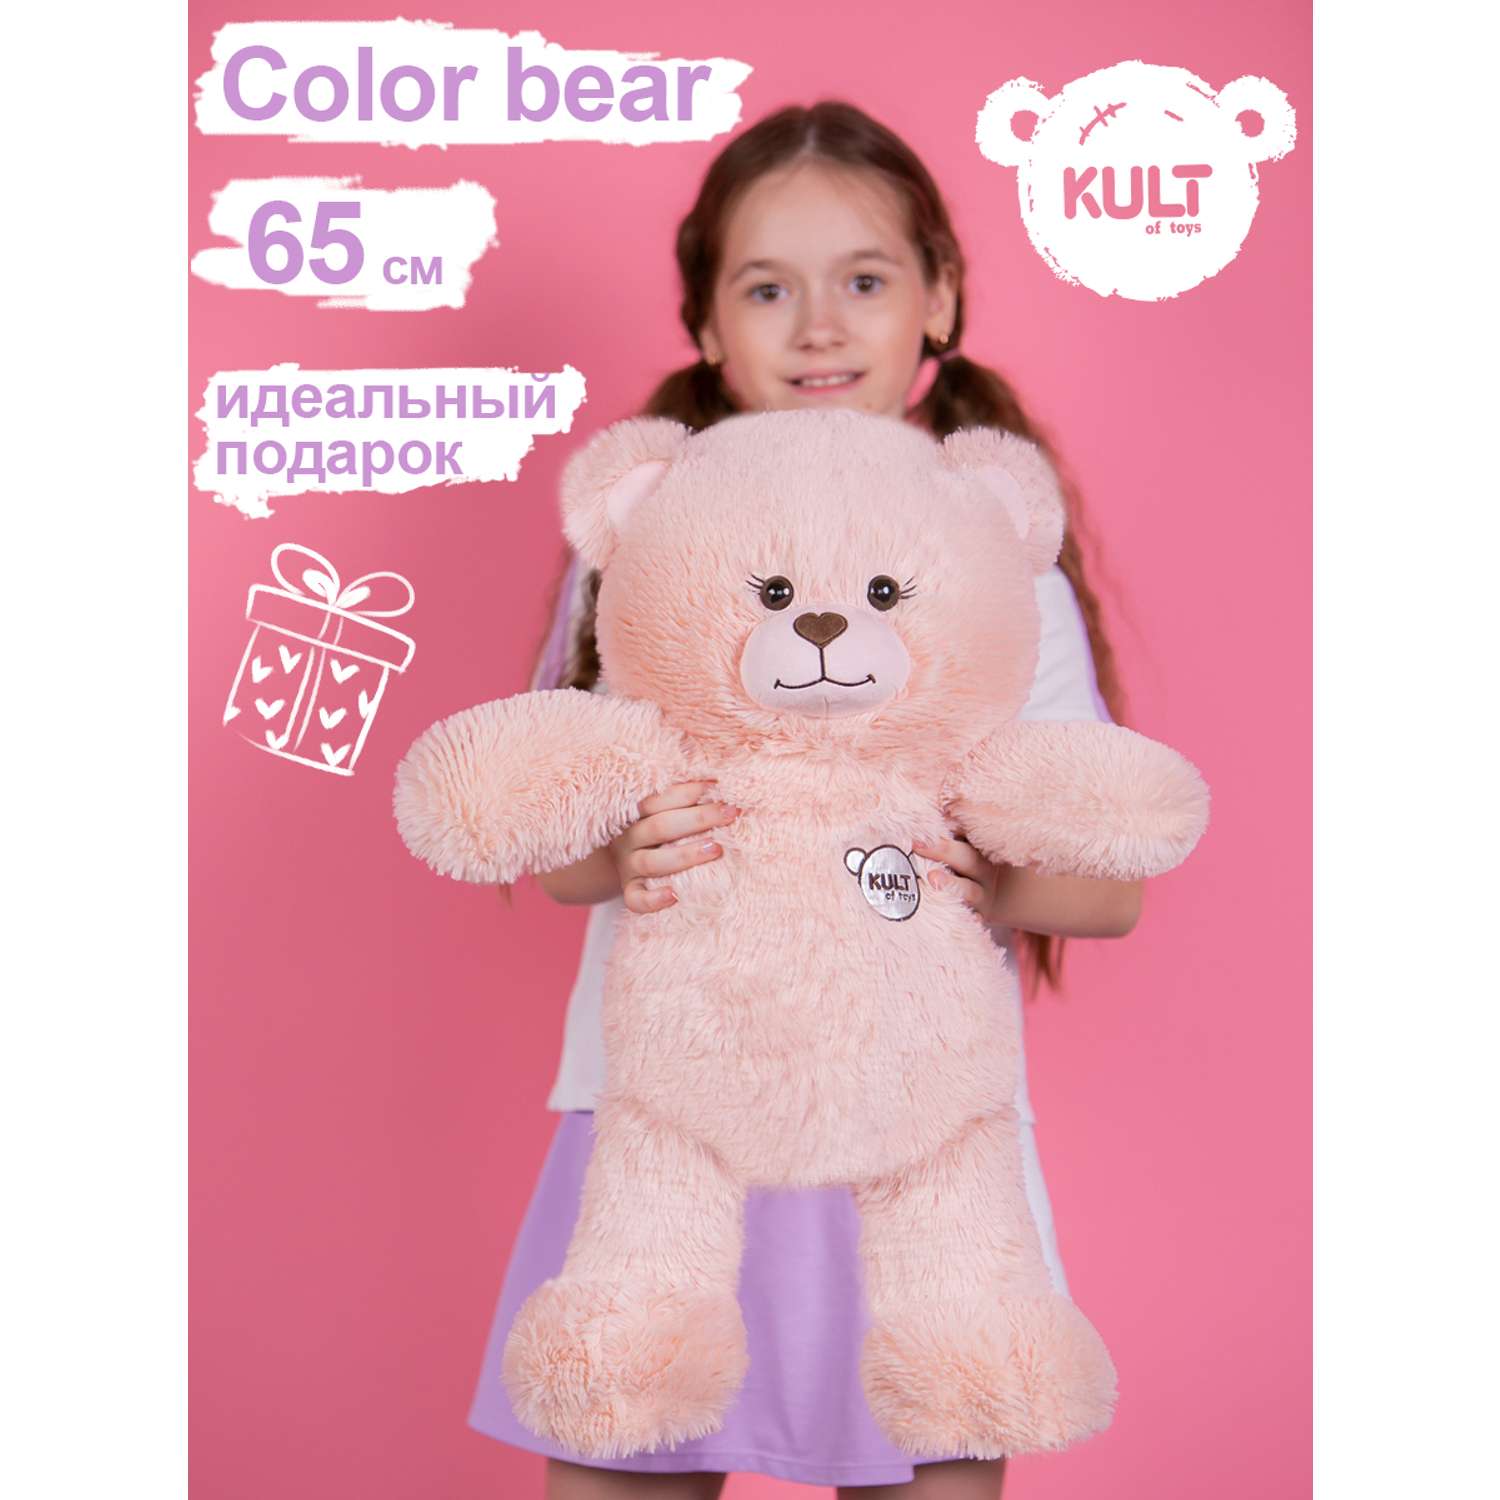 Мягкая игрушка KULT of toys Плюшевый медведь Color Bear 65 см цвет пудровый - фото 2